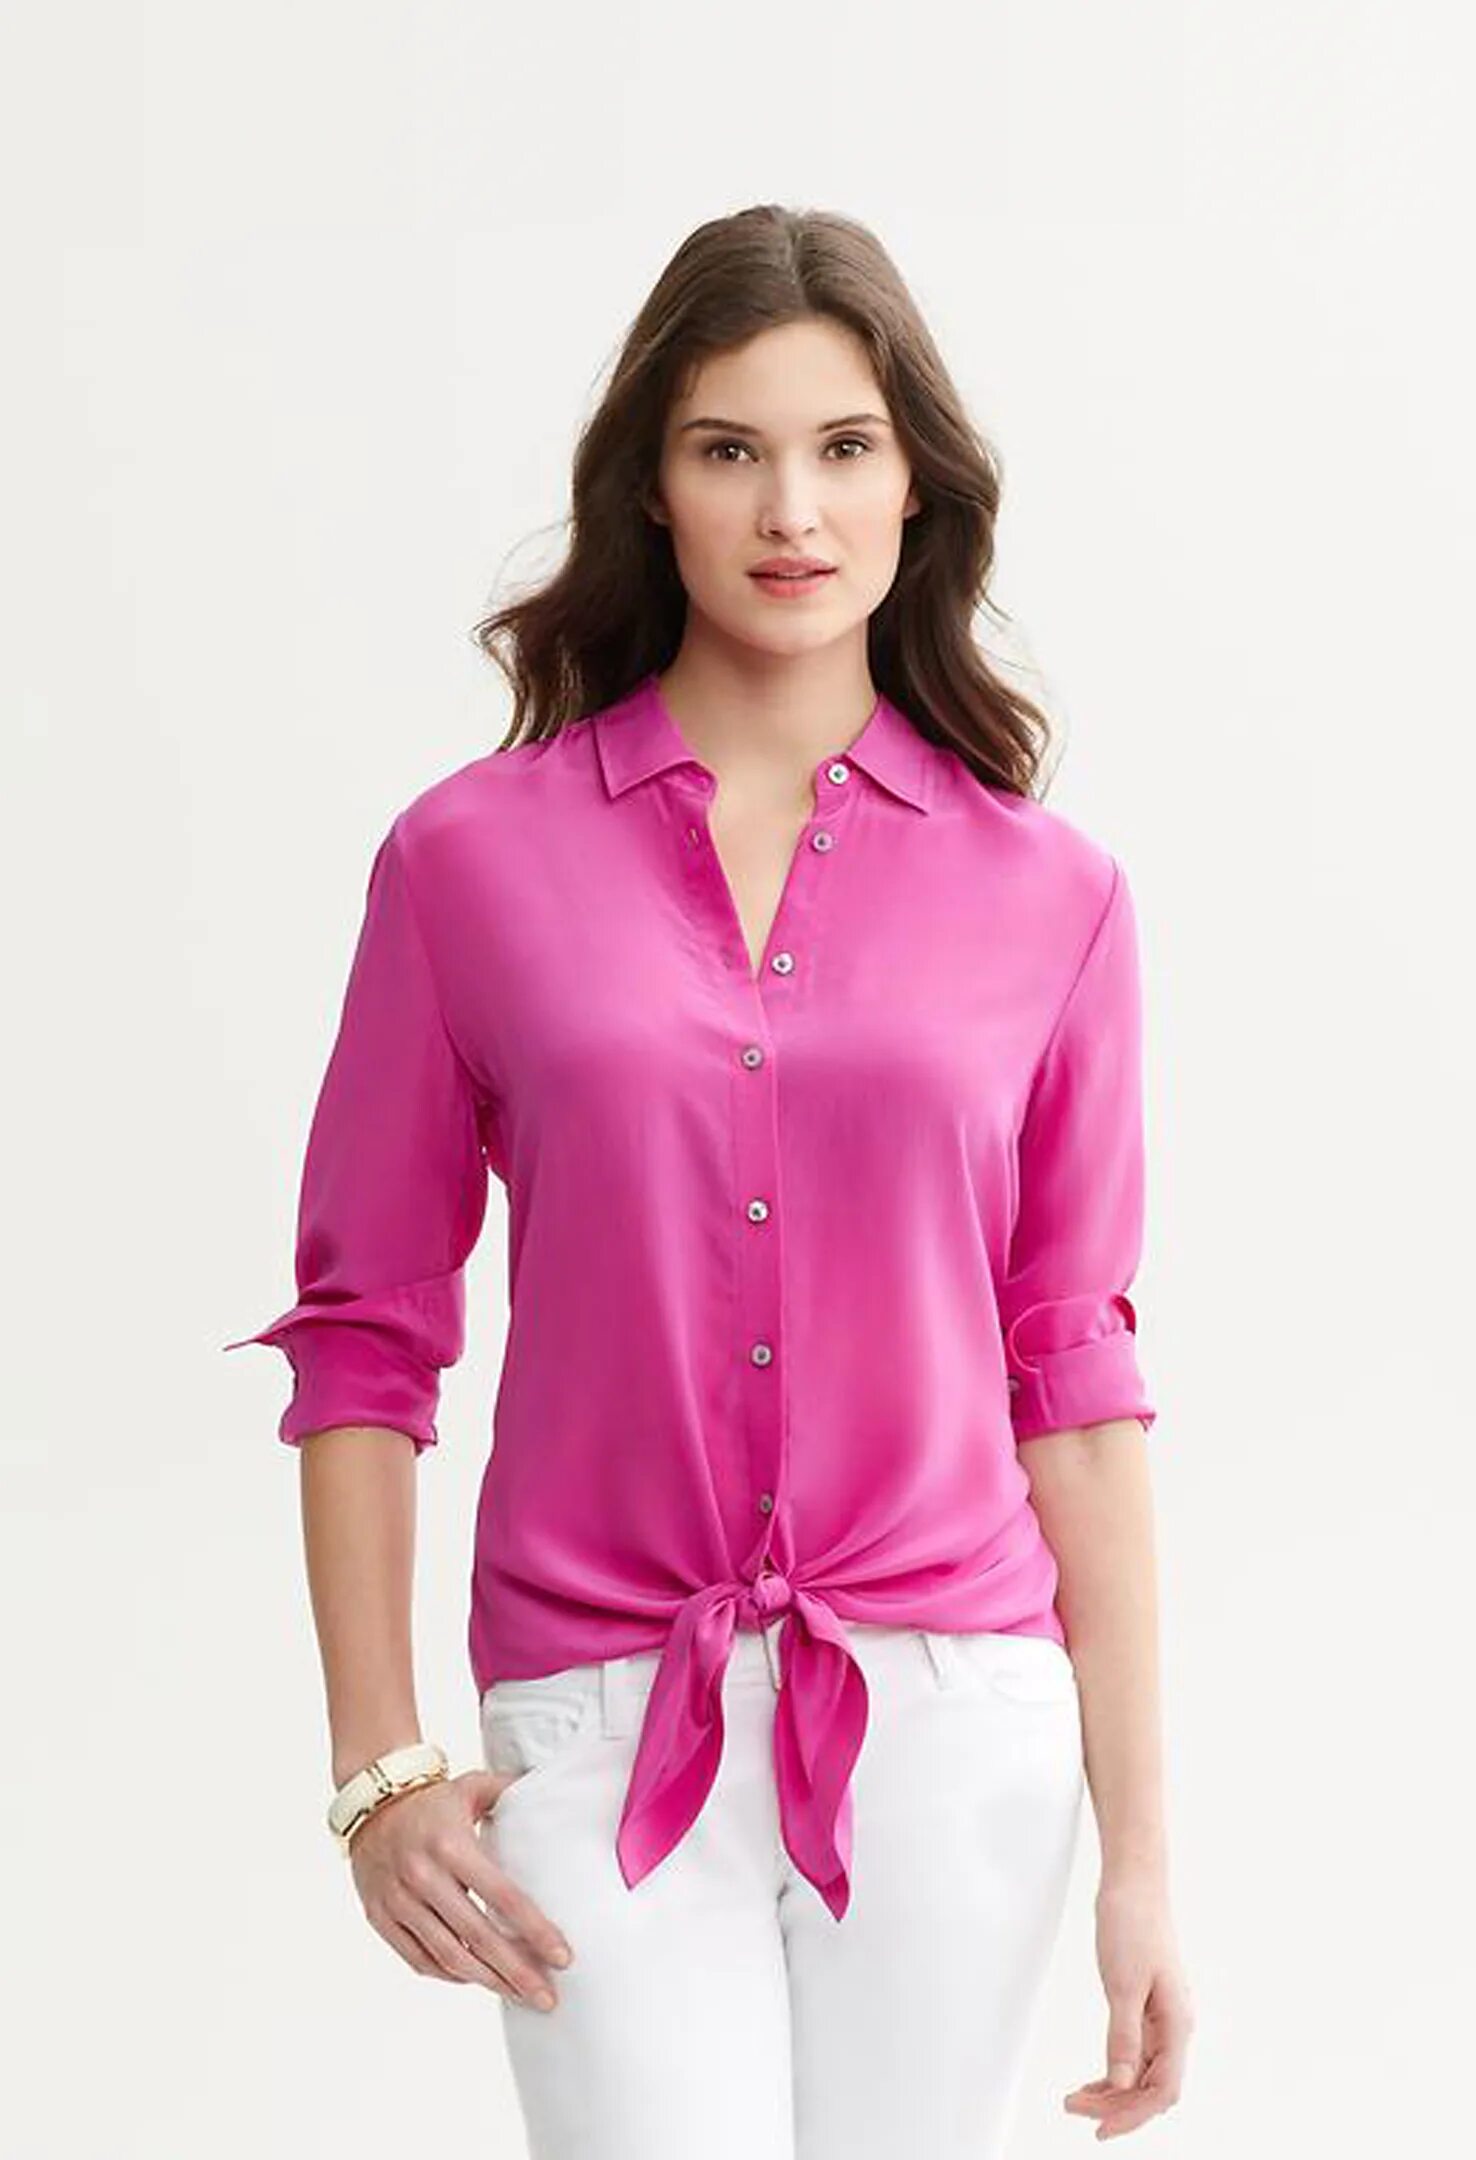 Женские блузки розовые. Розовая блузка. Блузка женская. Розовая блузка женская. Розовые блузки для женщин.